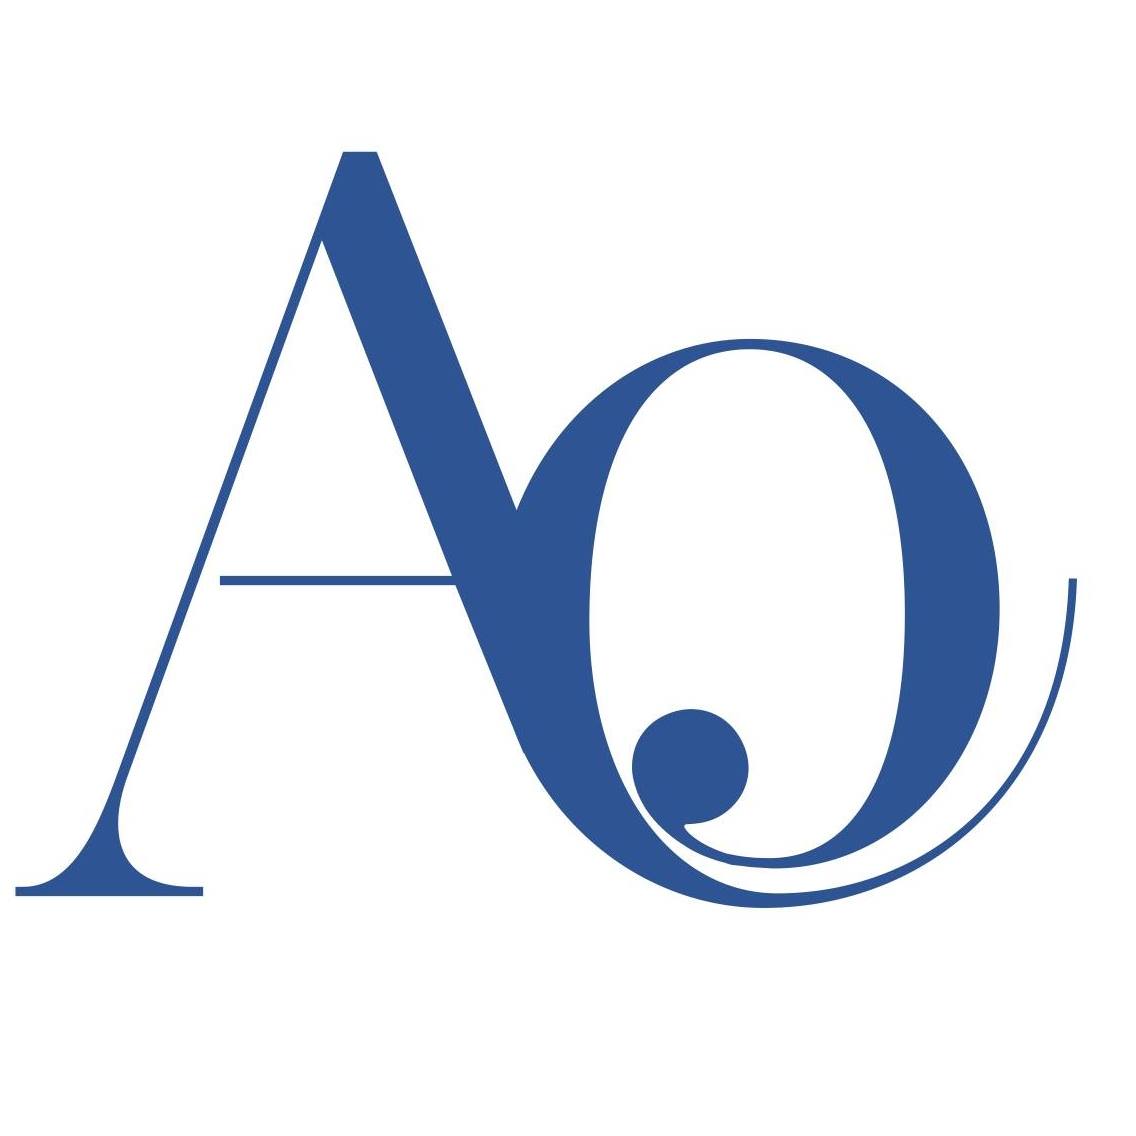 AO logo